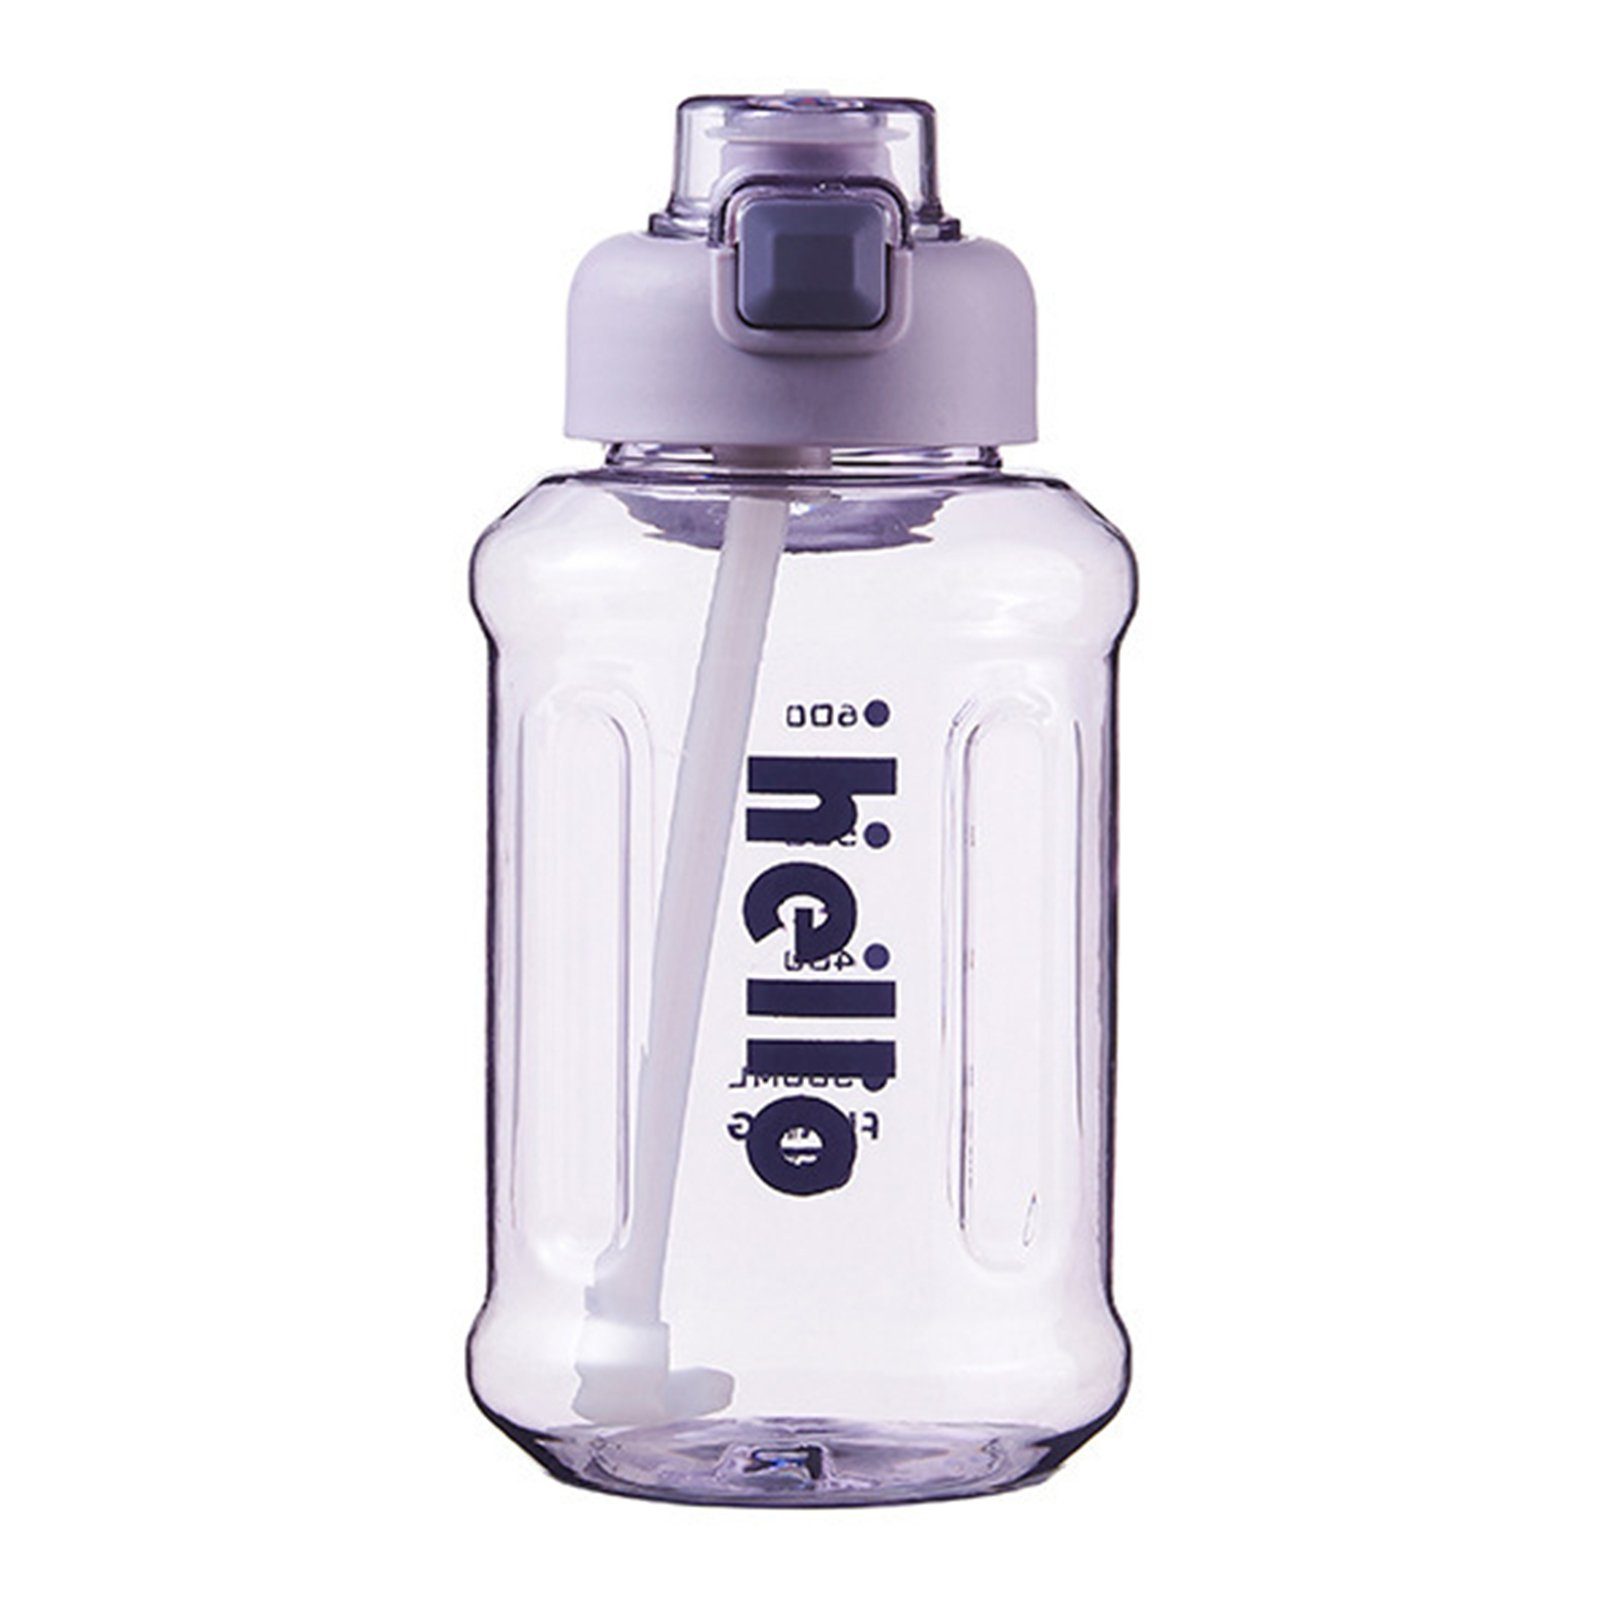 Blusmart Trinkflasche Tragbarer Stroh-Wasserbecher Mit Griff, Hoher Kapazität, Versiegelter, Trinkflasche purple 800ml